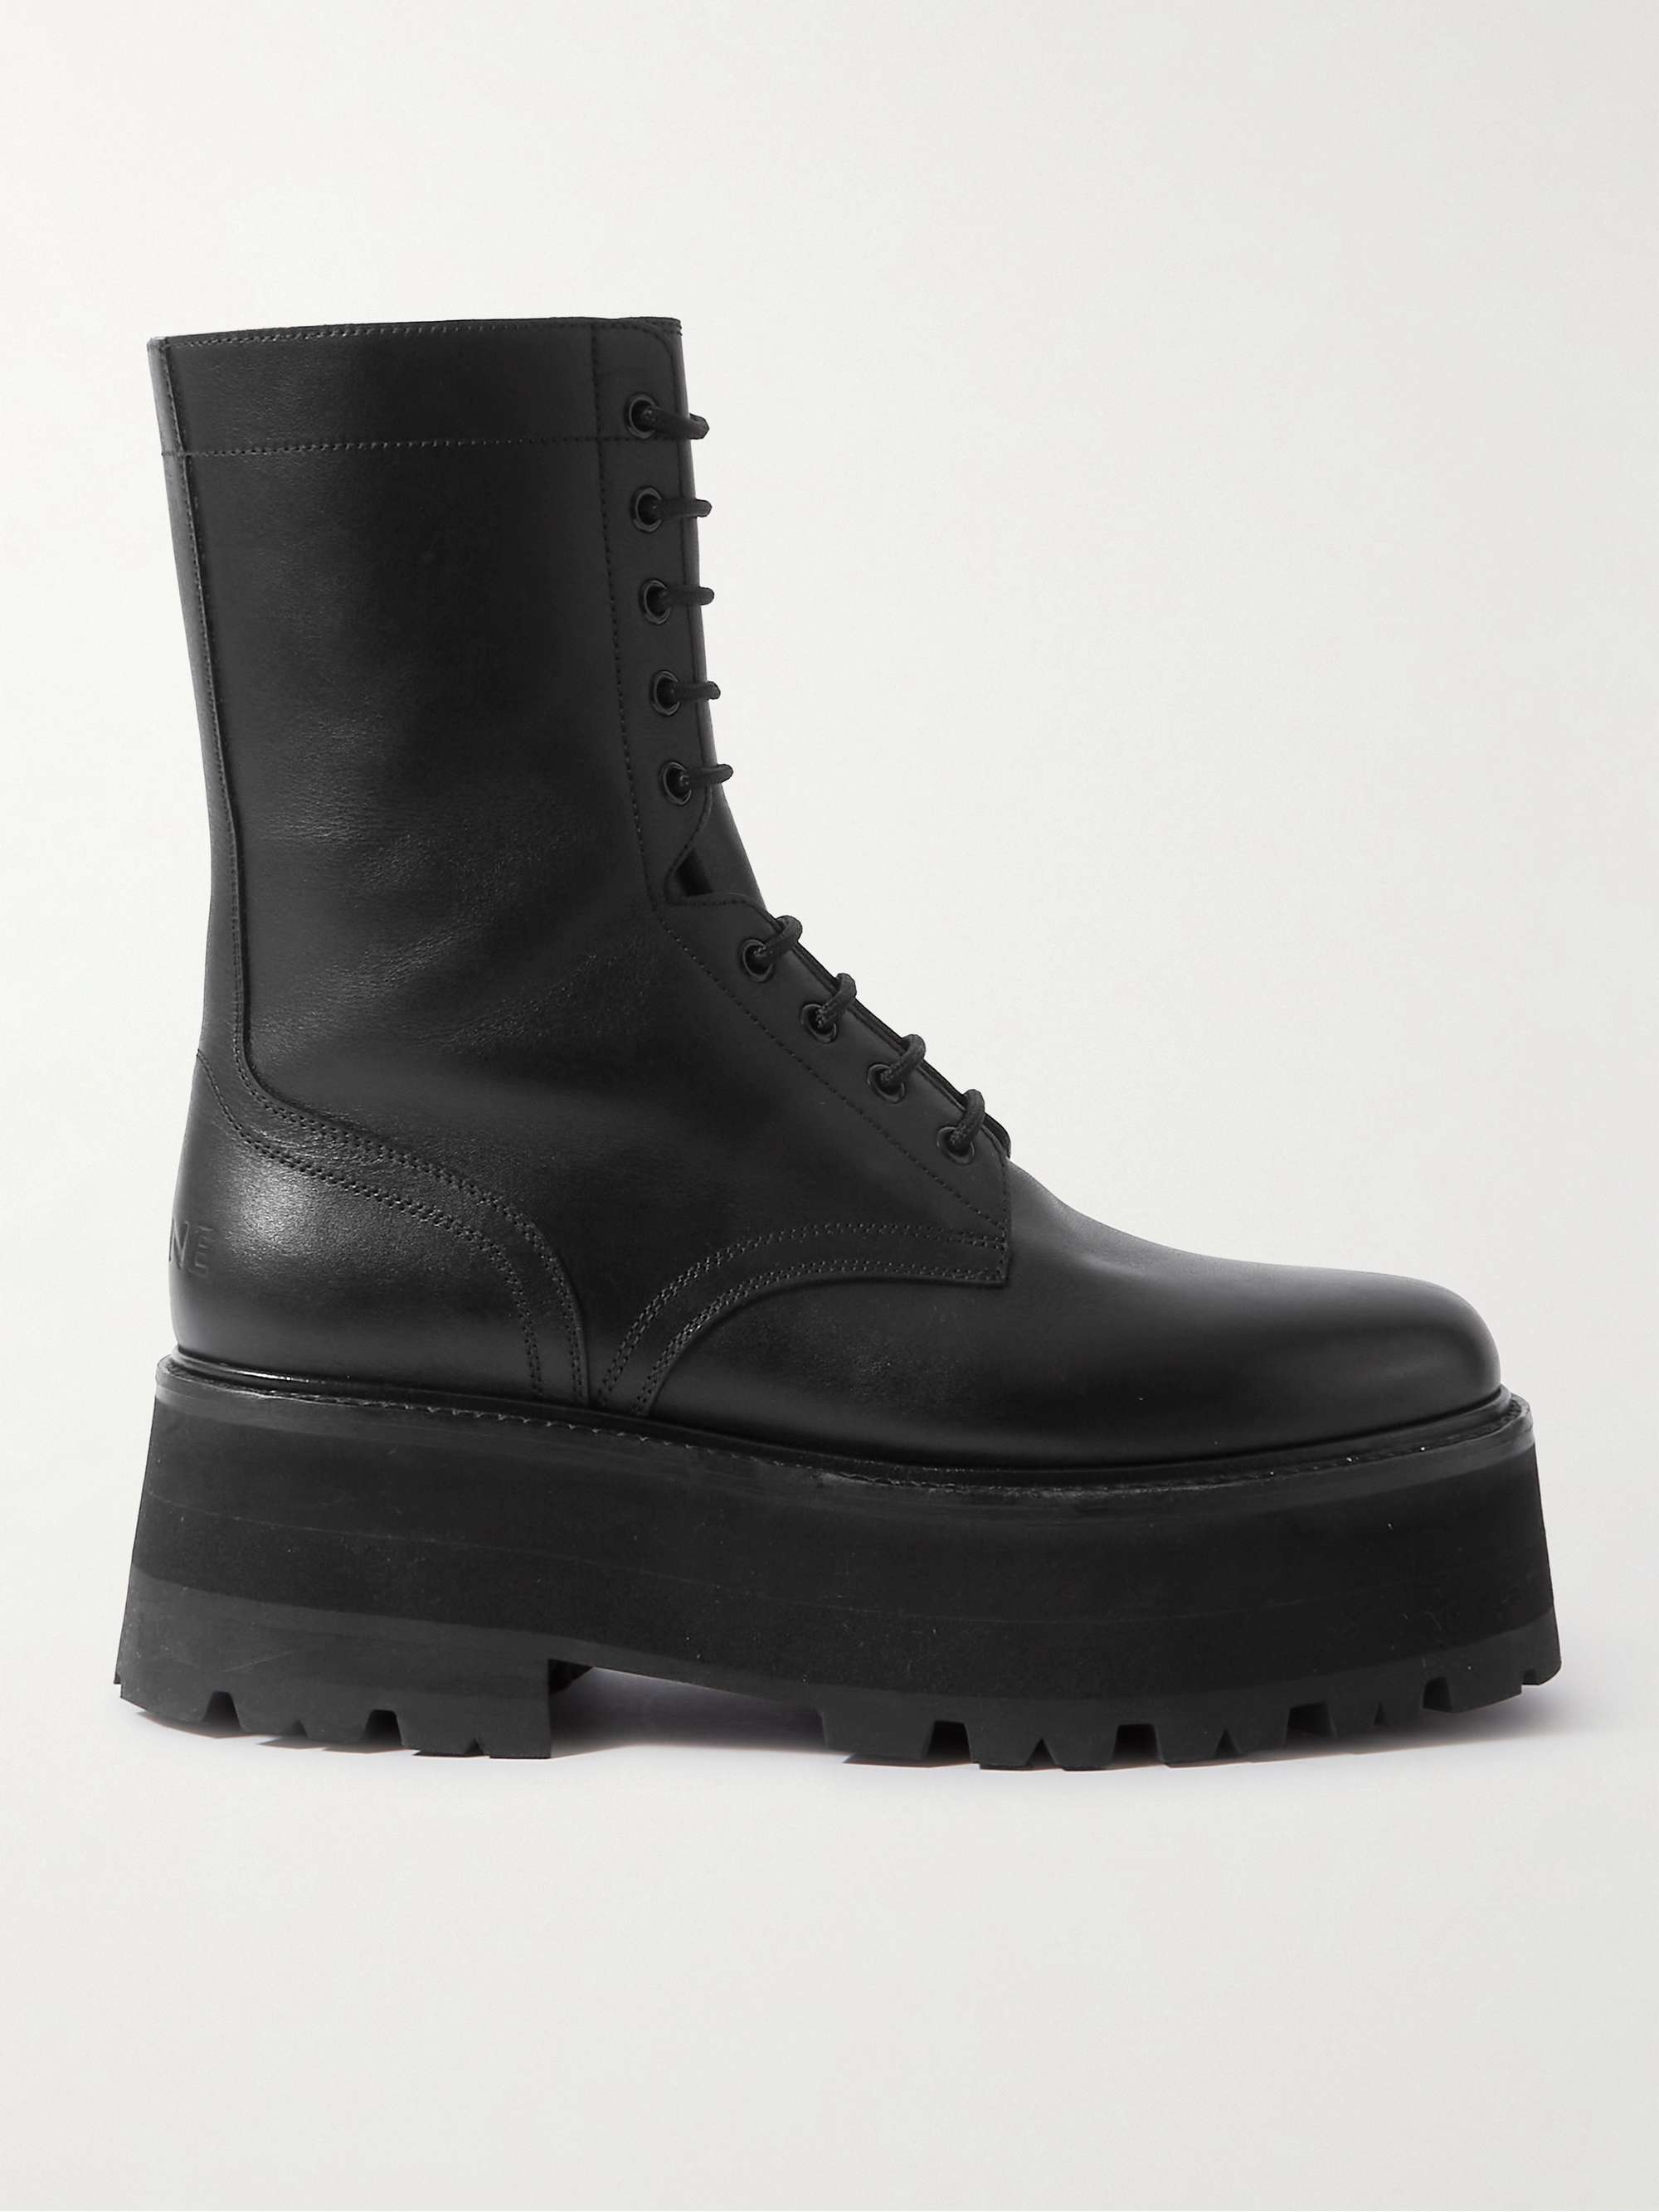 CELINE HOMME Leather Platform Boots for Men | MR PORTER